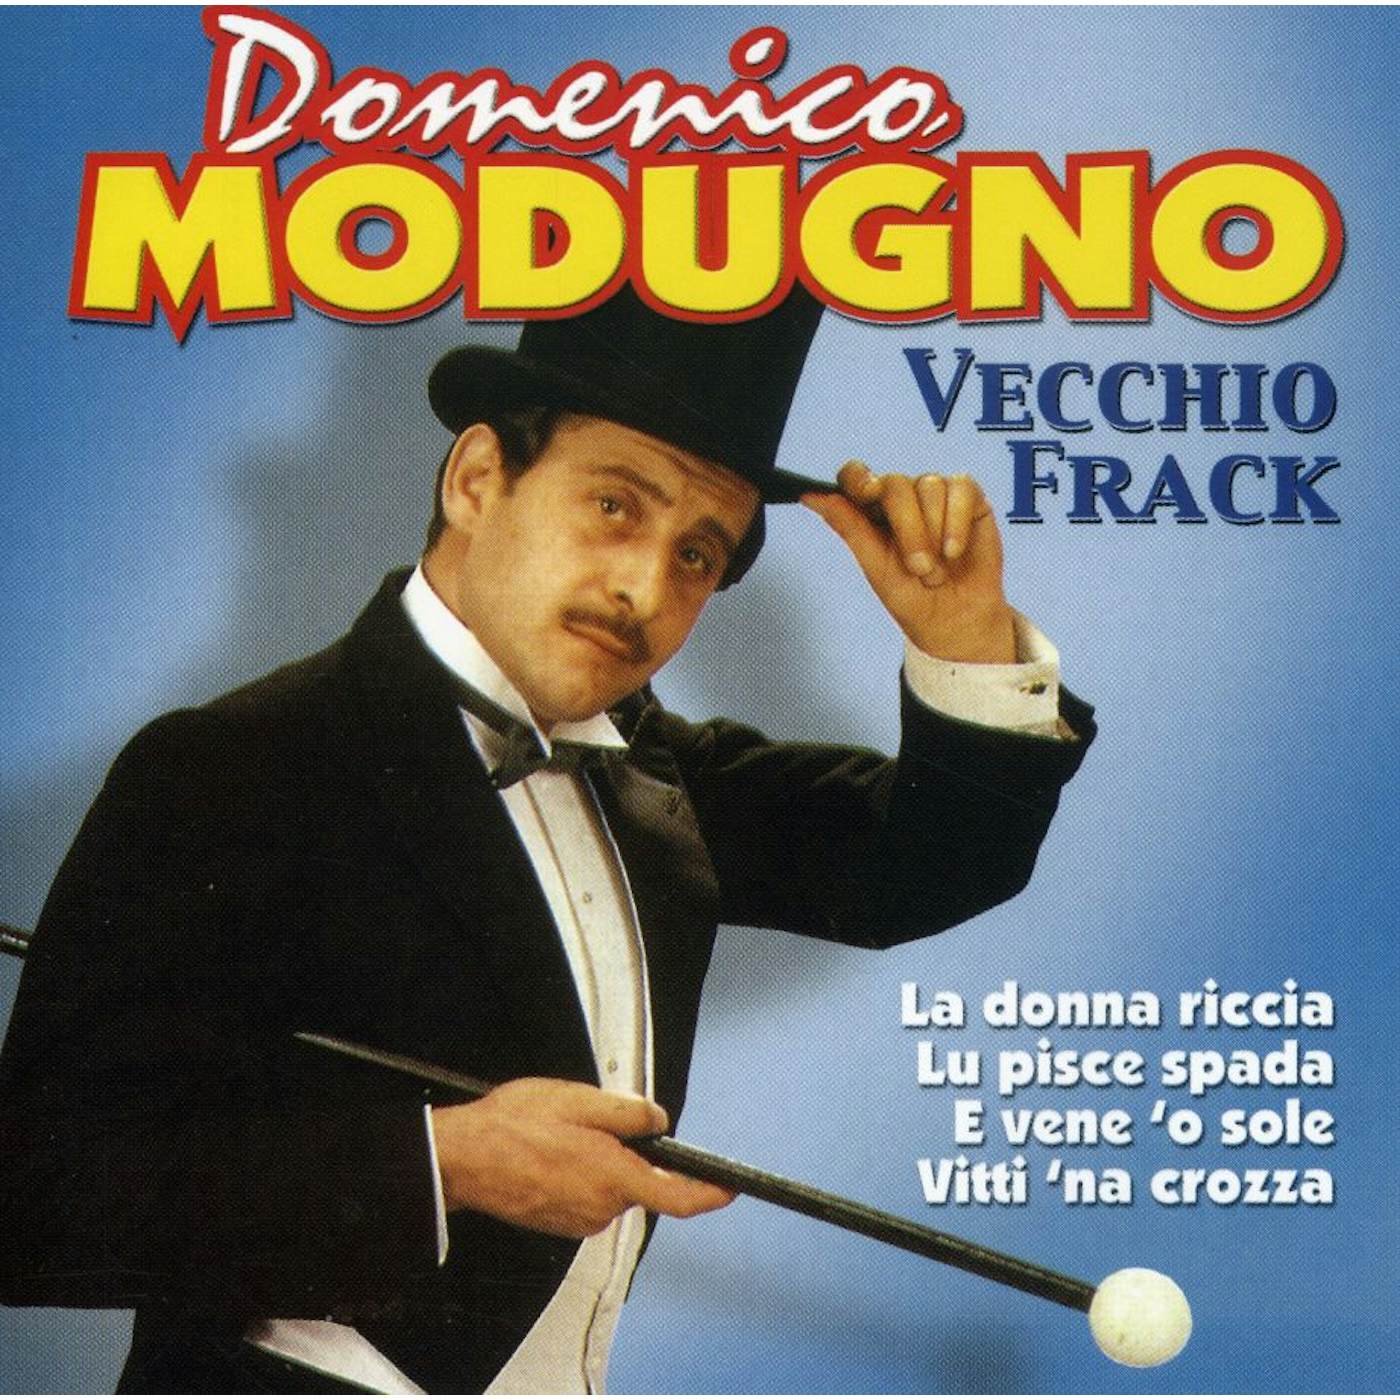 Domenico Modugno VECCHIO FRACK CD